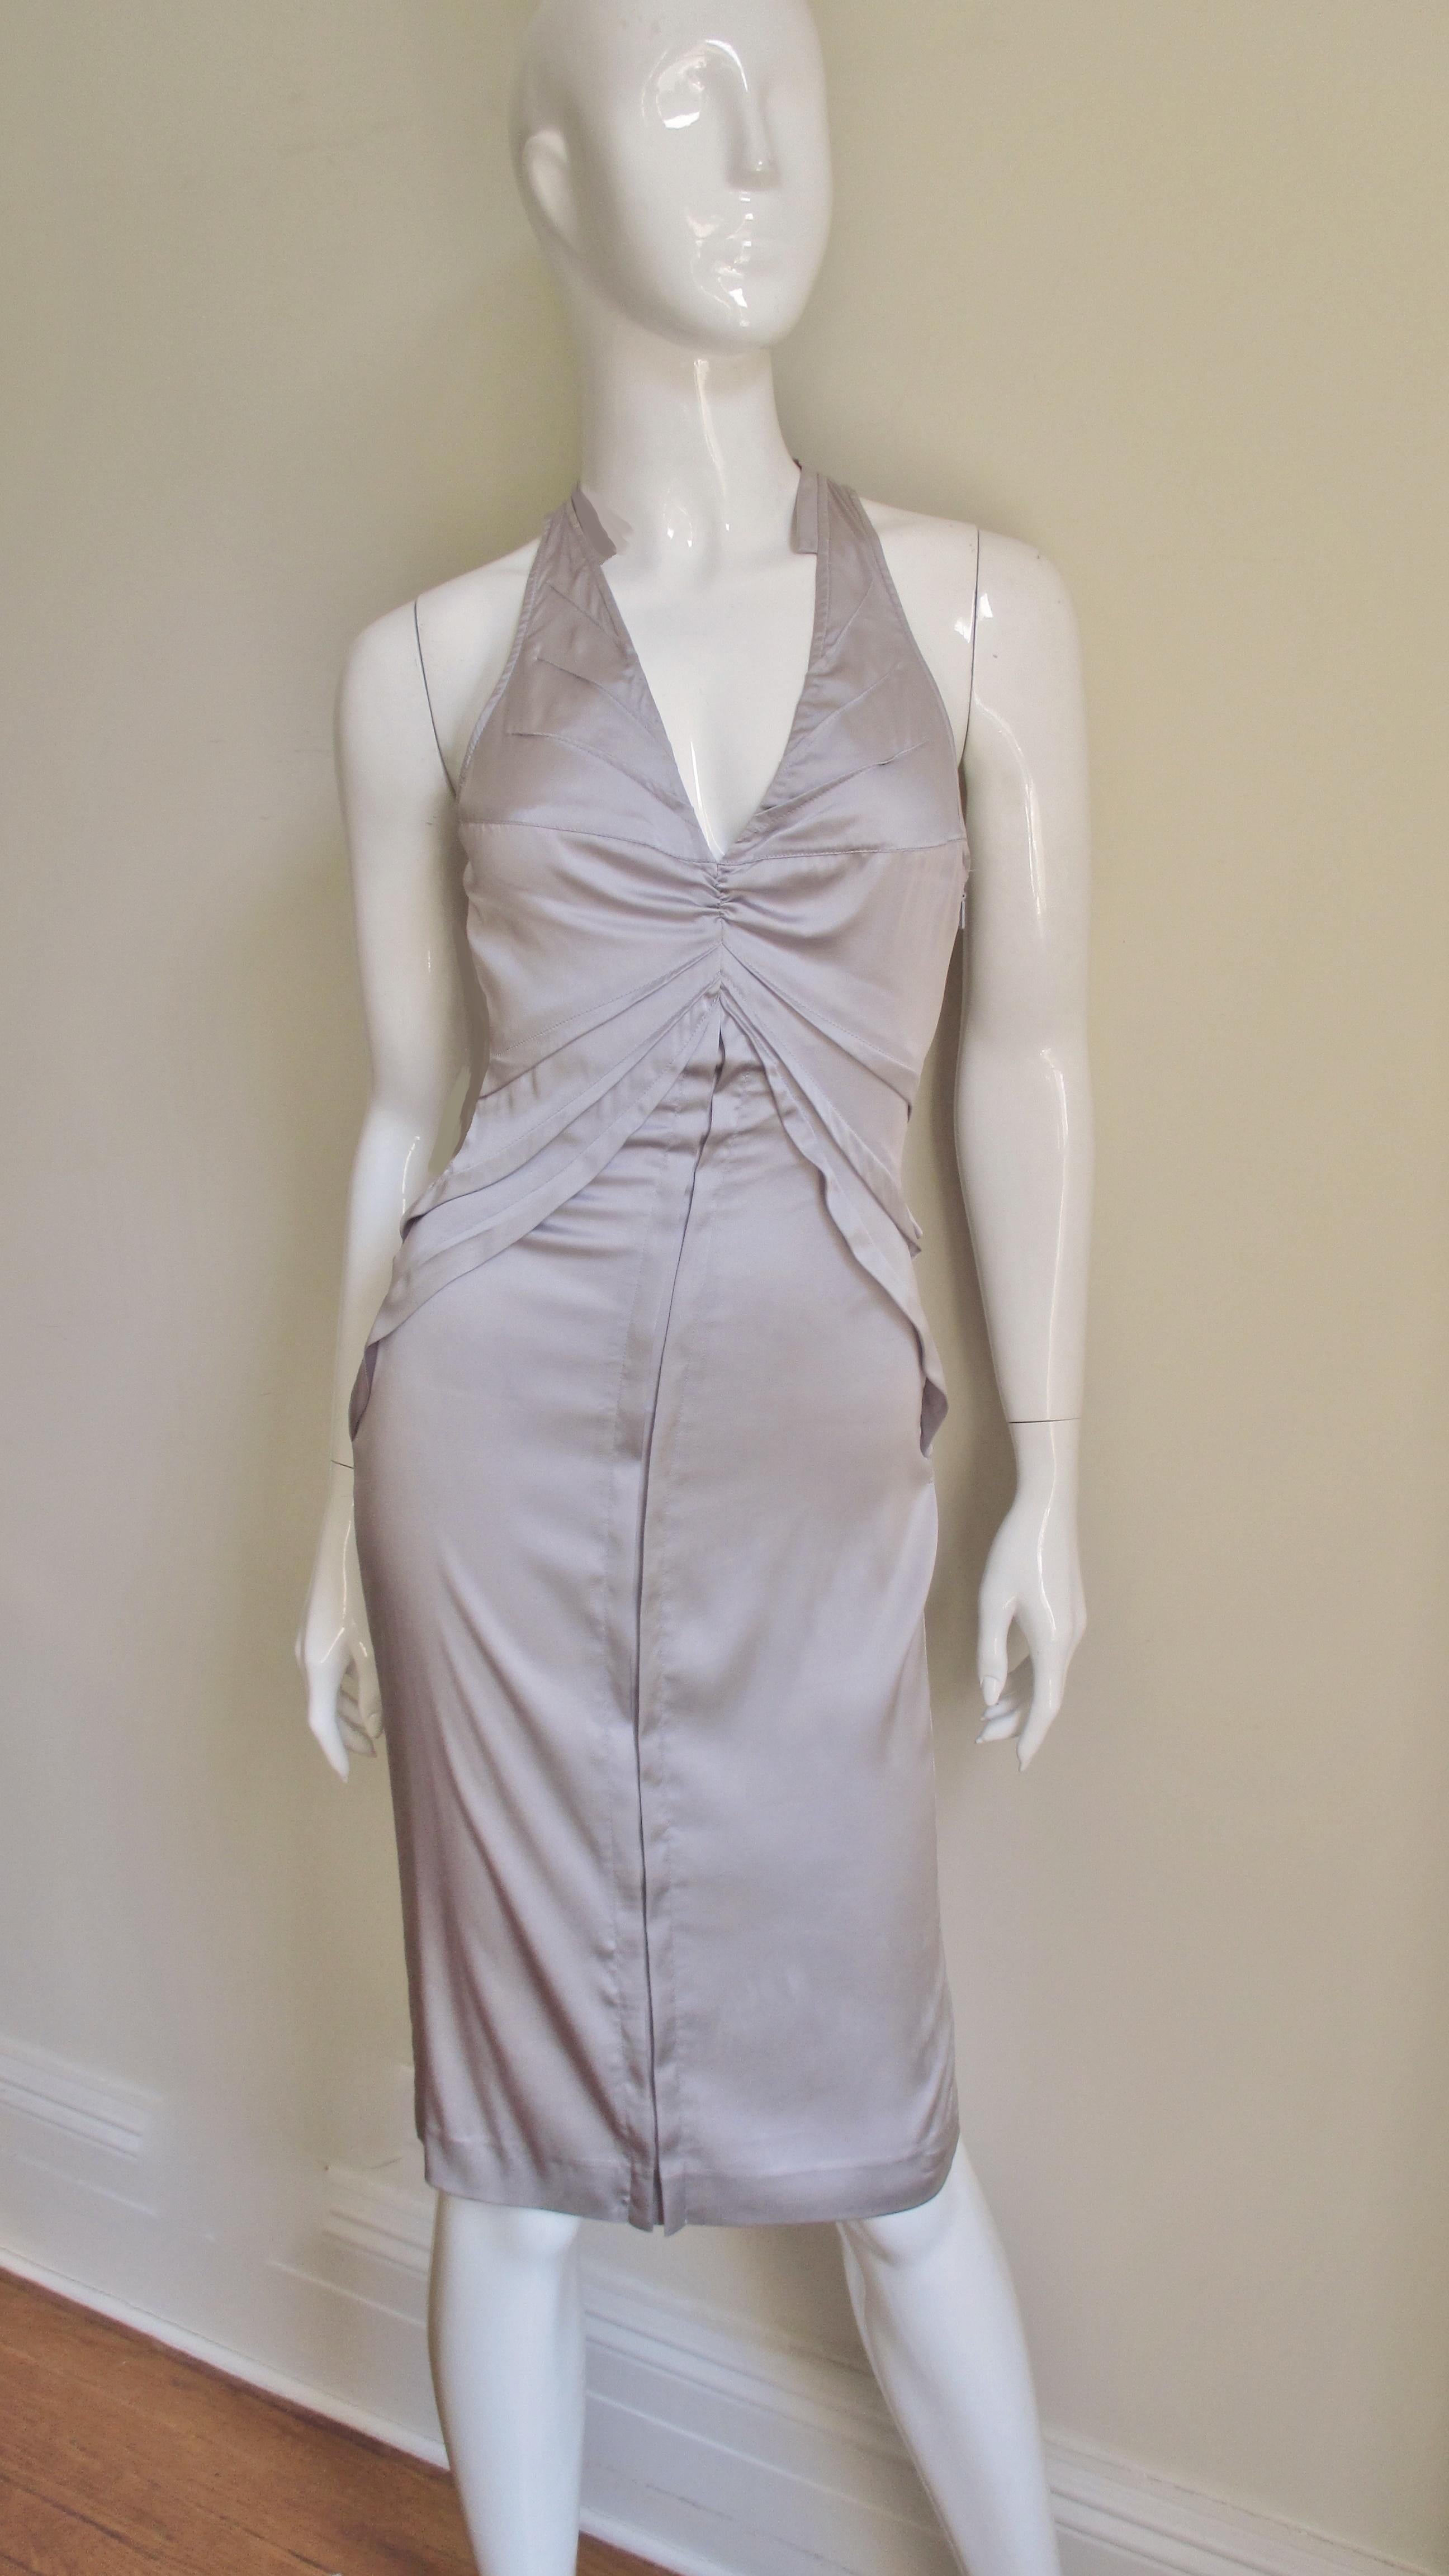 Une fabuleuse robe en soie stretch lavande par Tom Ford pour la collection Gucci S/S 2003.  Elle présente un dos racé et un décolleté plongeant sur le devant, avec de multiples coutures qui en émanent et des coutures latérales qui dessinent la